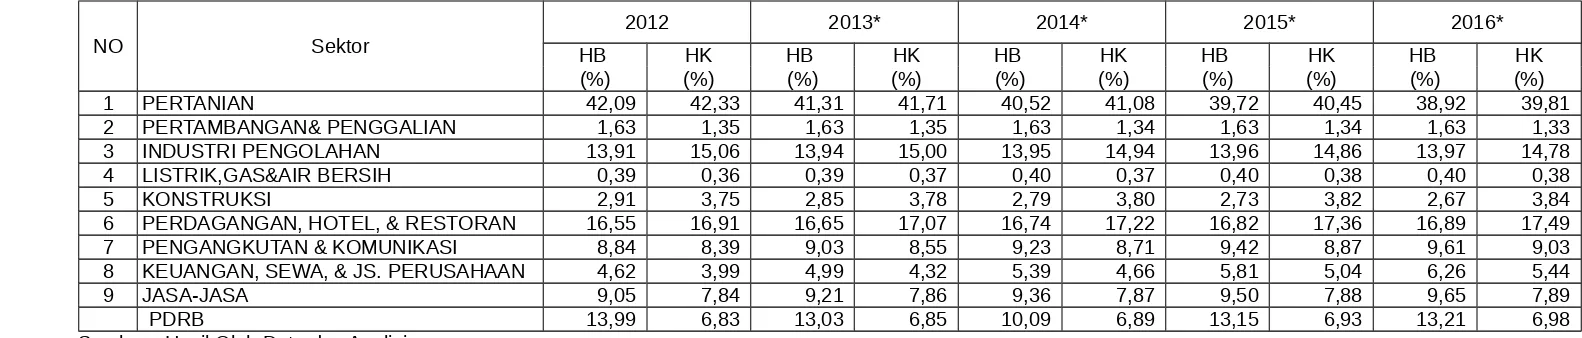 Tabel 3.4Perkembangan Kontribusi Sektor dalam PDRB Tahun 2012 - 2016